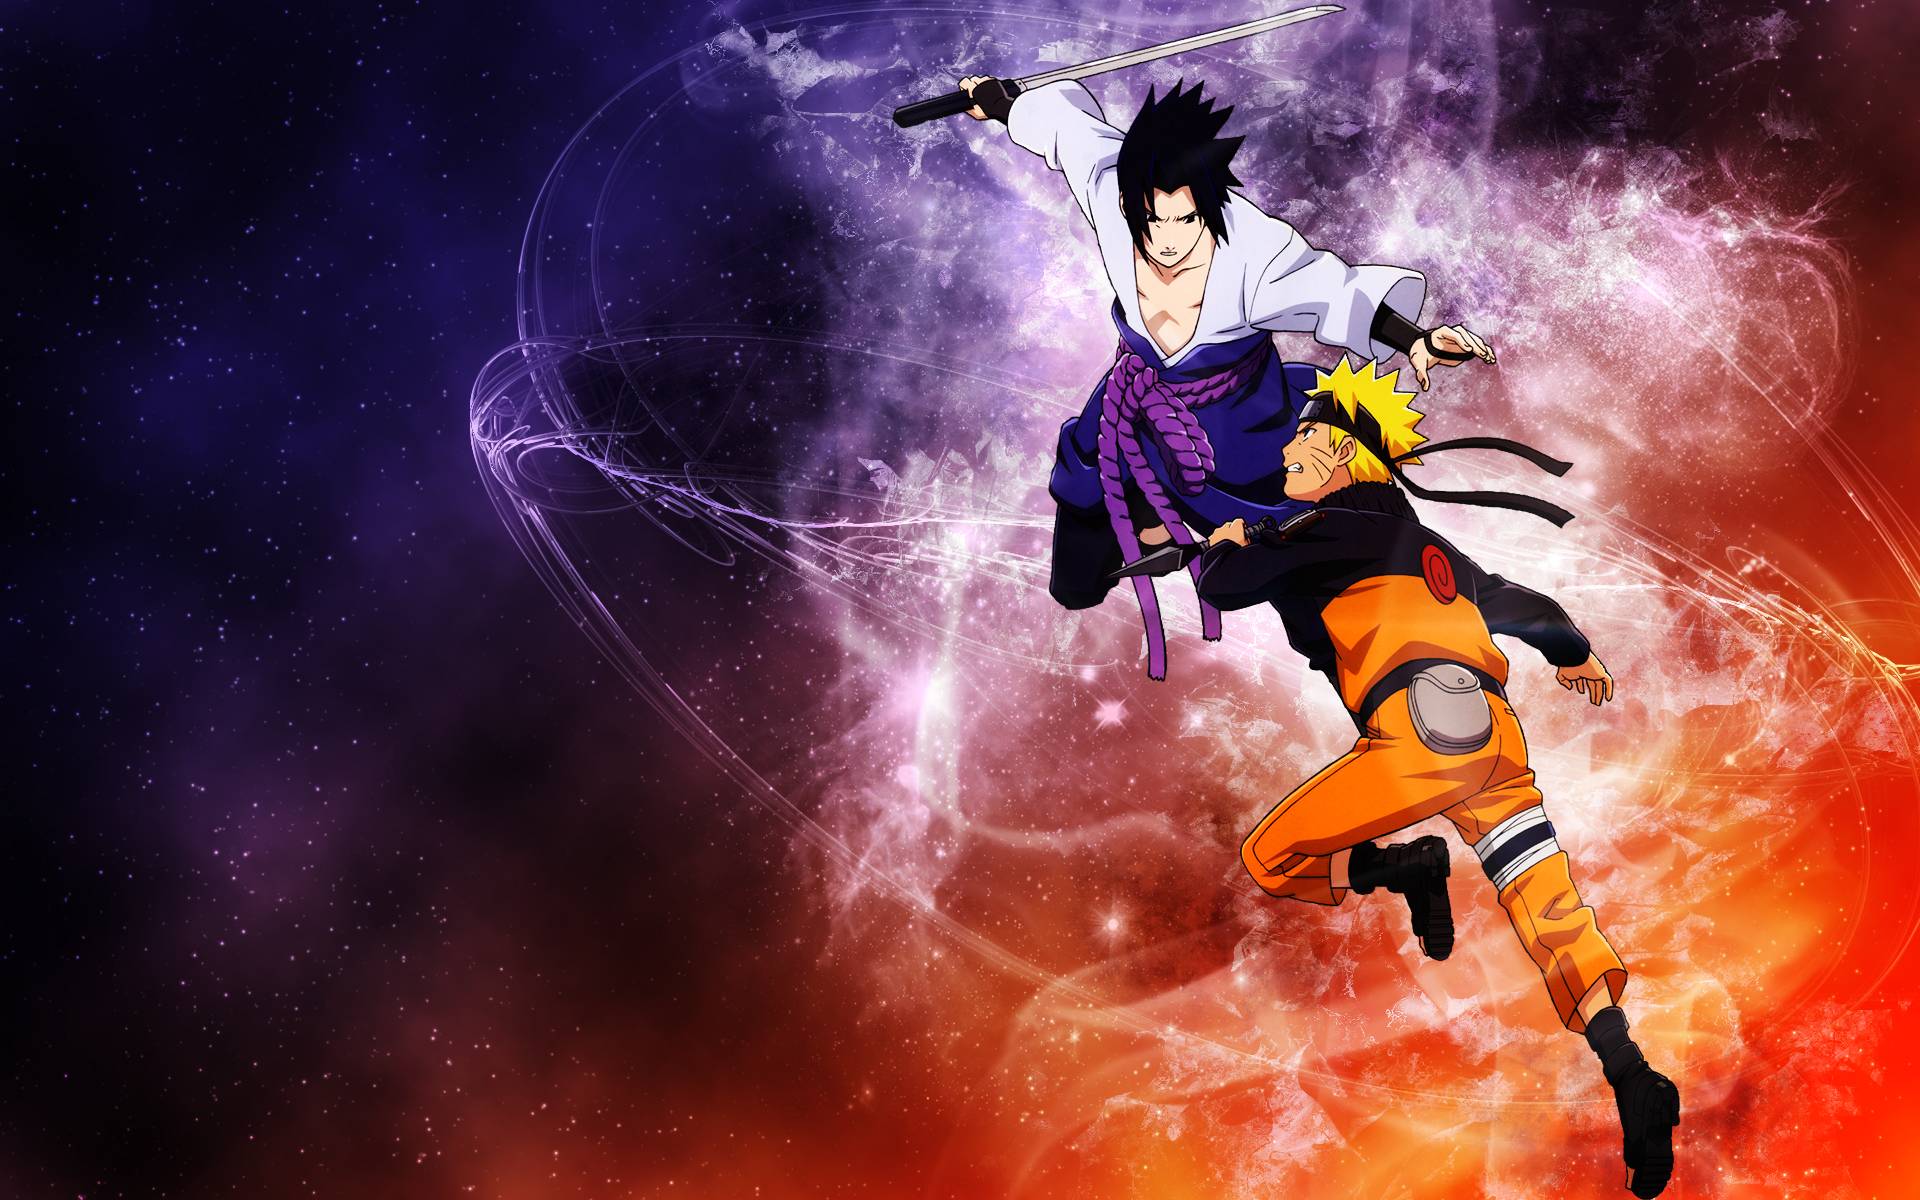 Naruto là một trong những bộ anime nổi tiếng nhất thế giới, với đầy đủ những hình nền đẹp mắt. Hãy tìm kiếm những hình ảnh tuyệt vời của Naruto và các nhân vật yêu thích của bạn. Hình nền Naruto sẽ để lại ấn tượng đậm nét trong trái tim của người xem.